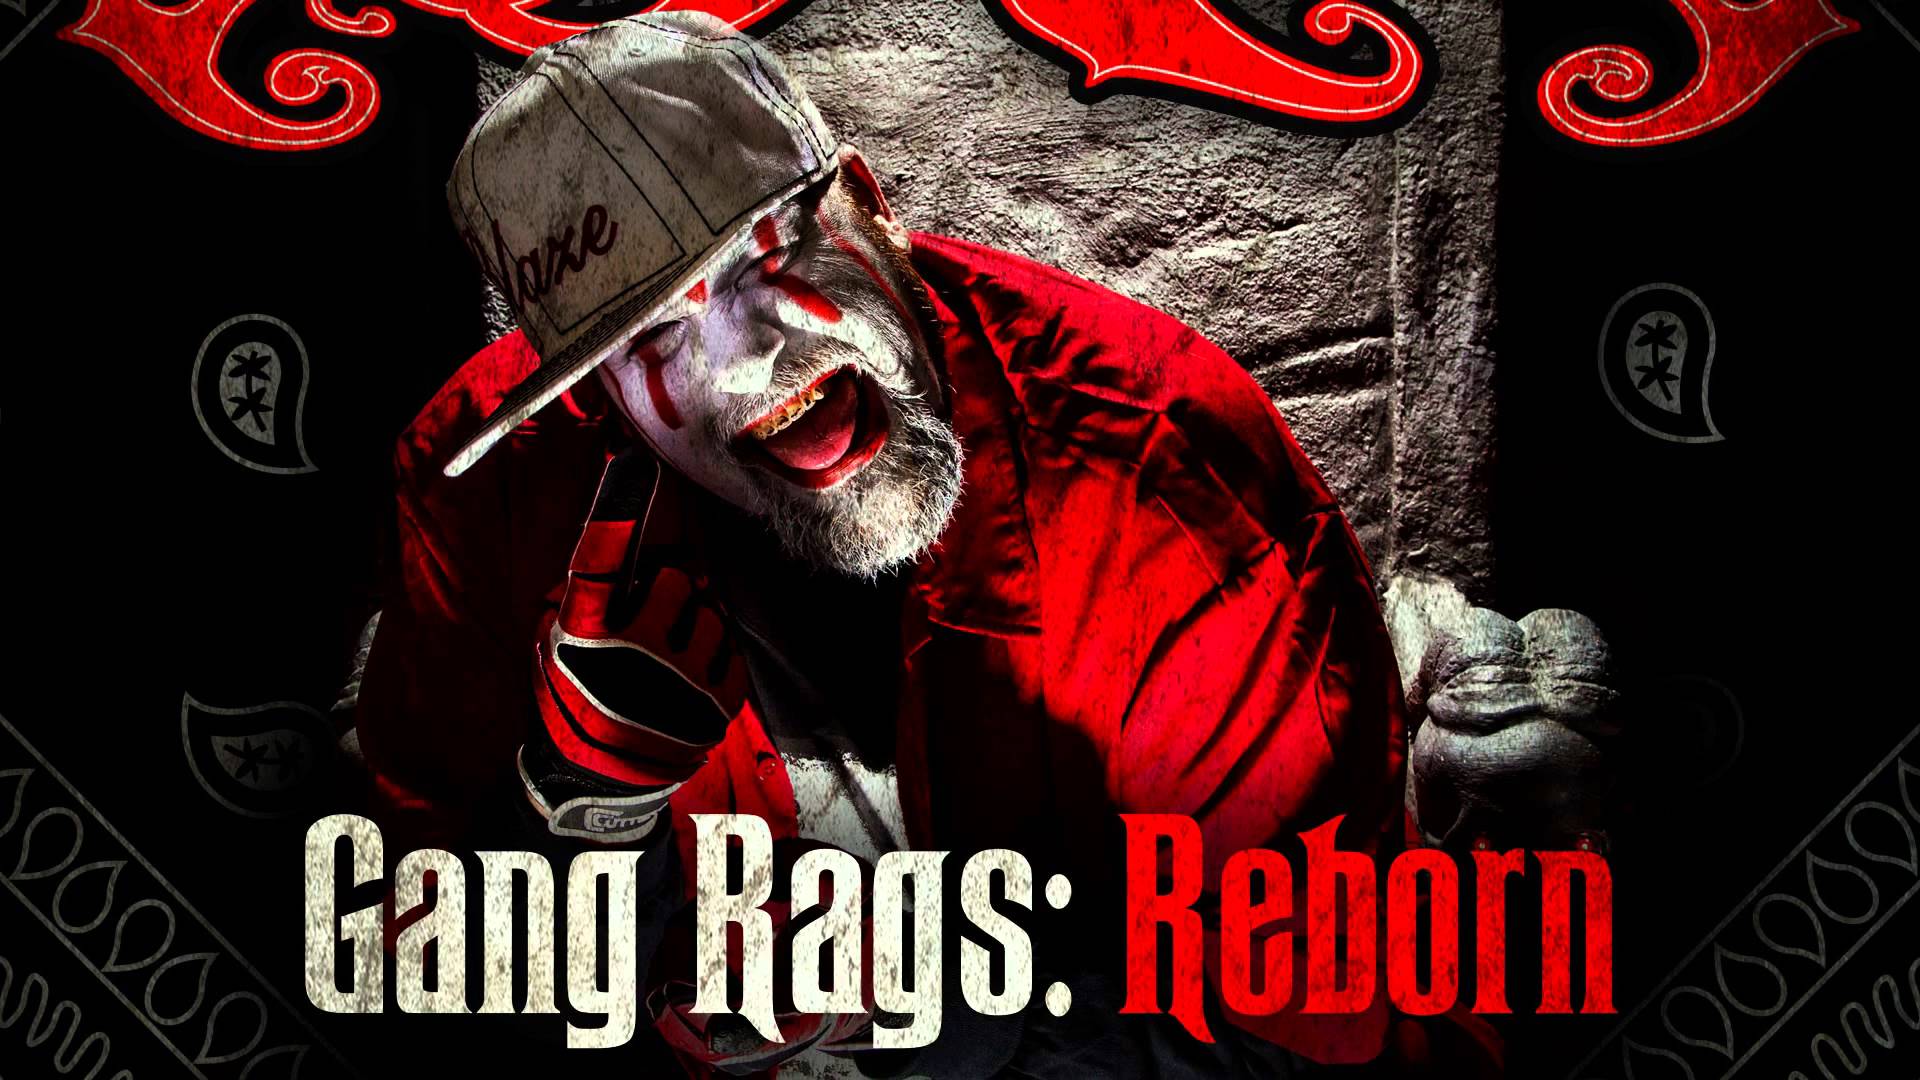 Blaze Ya Dead Homie Gangsta Rags: Reborn